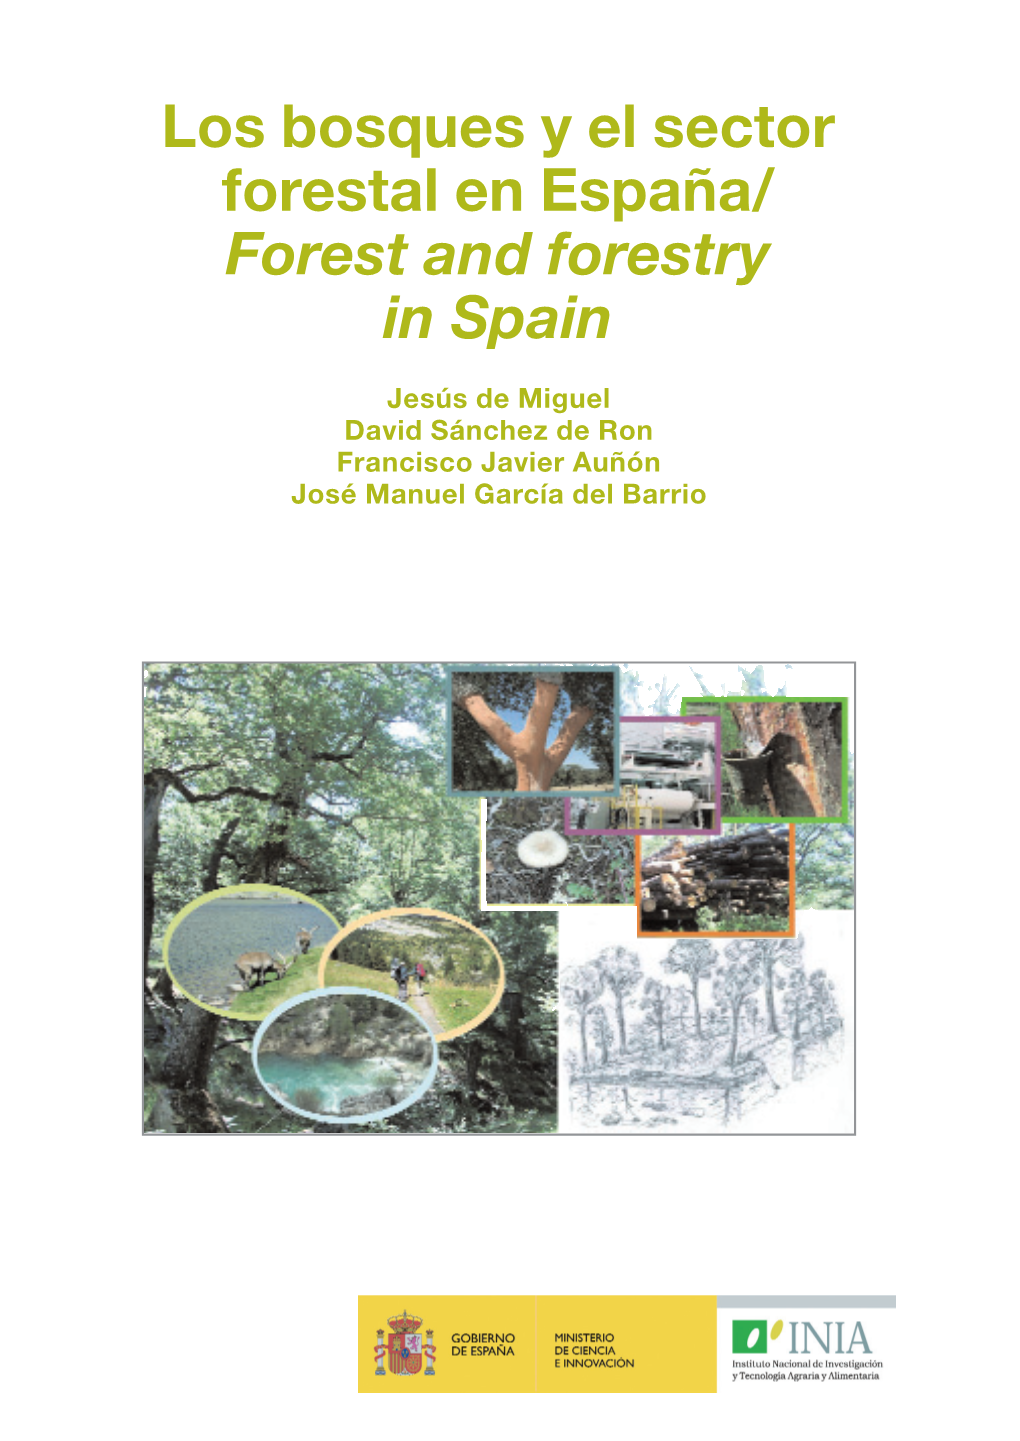 Los Bosques Y El Sector Forestal En España/ Los Bosques Y El Sector Forestal 00 Cubiertas Página 2 Modelo Cap 06